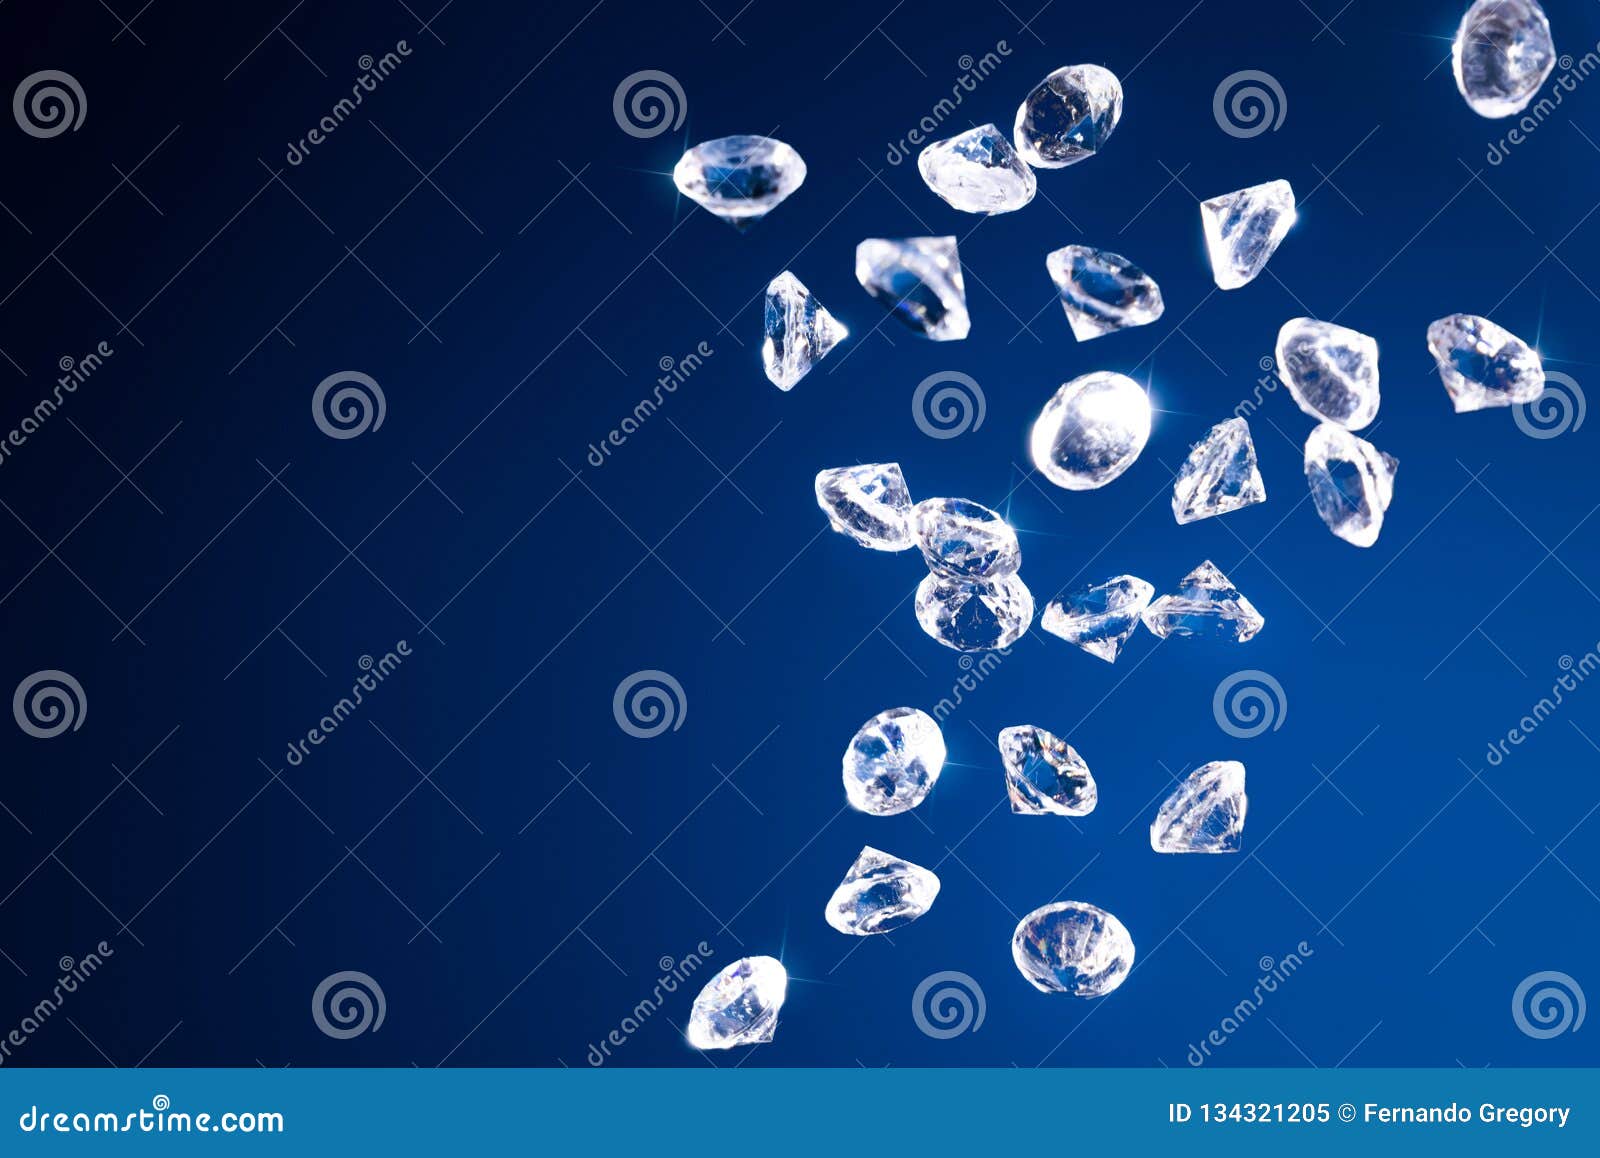 shiny diamonds on a blue background